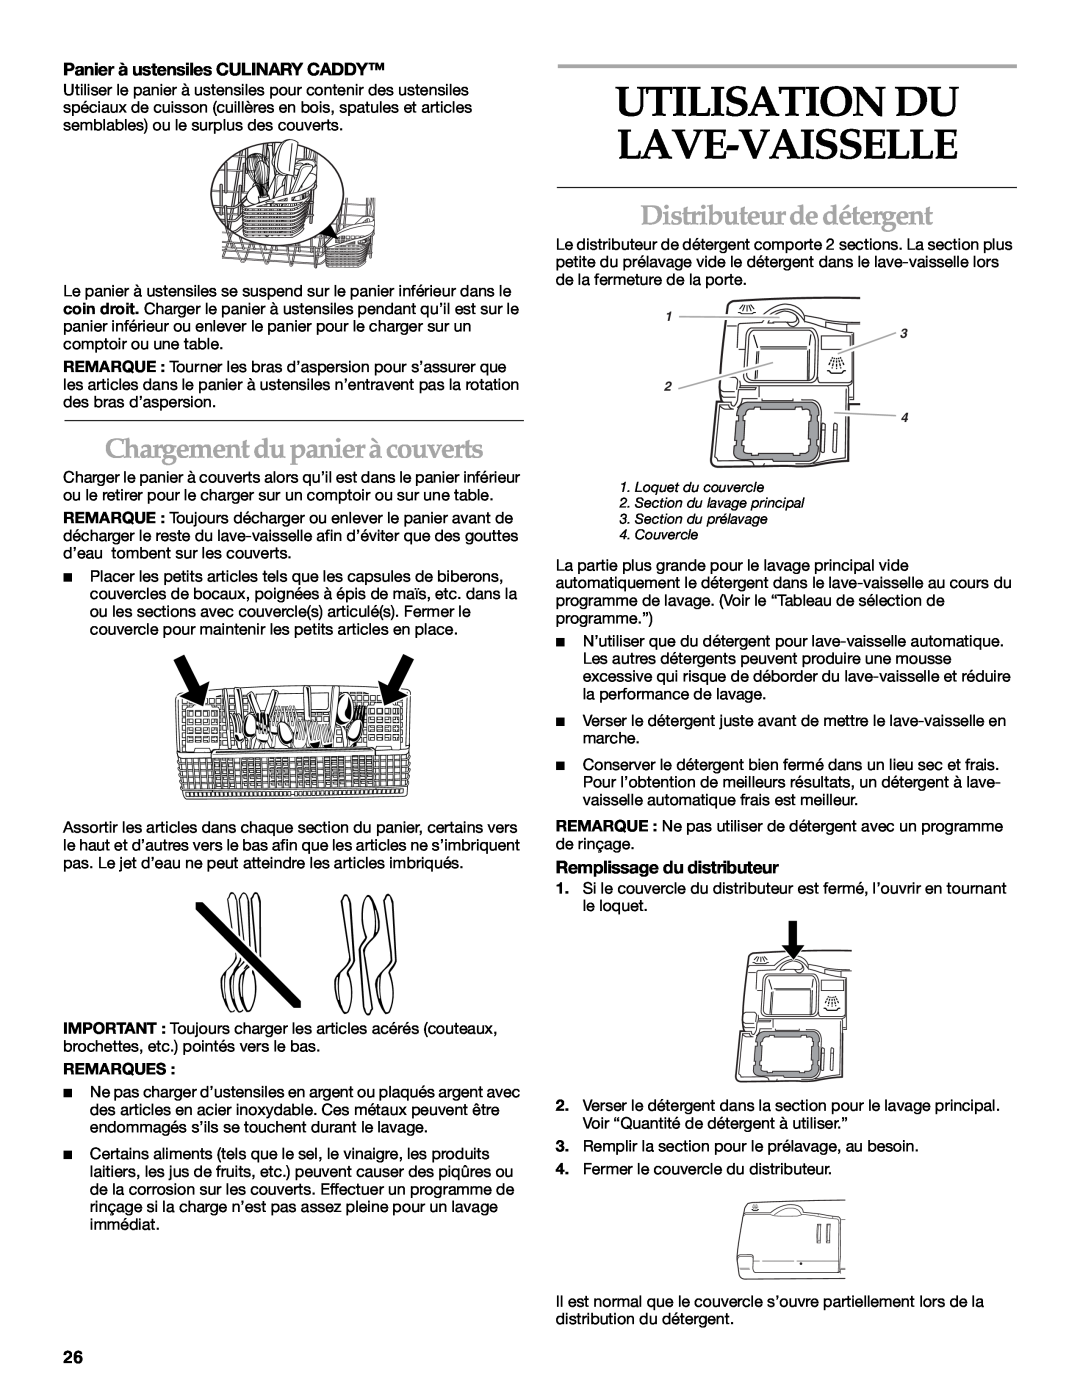 KitchenAid KUDR01TJ manual Chargement du panier à couverts, Distributeur de détergent, Panier à ustensiles CULINARY CADDY 